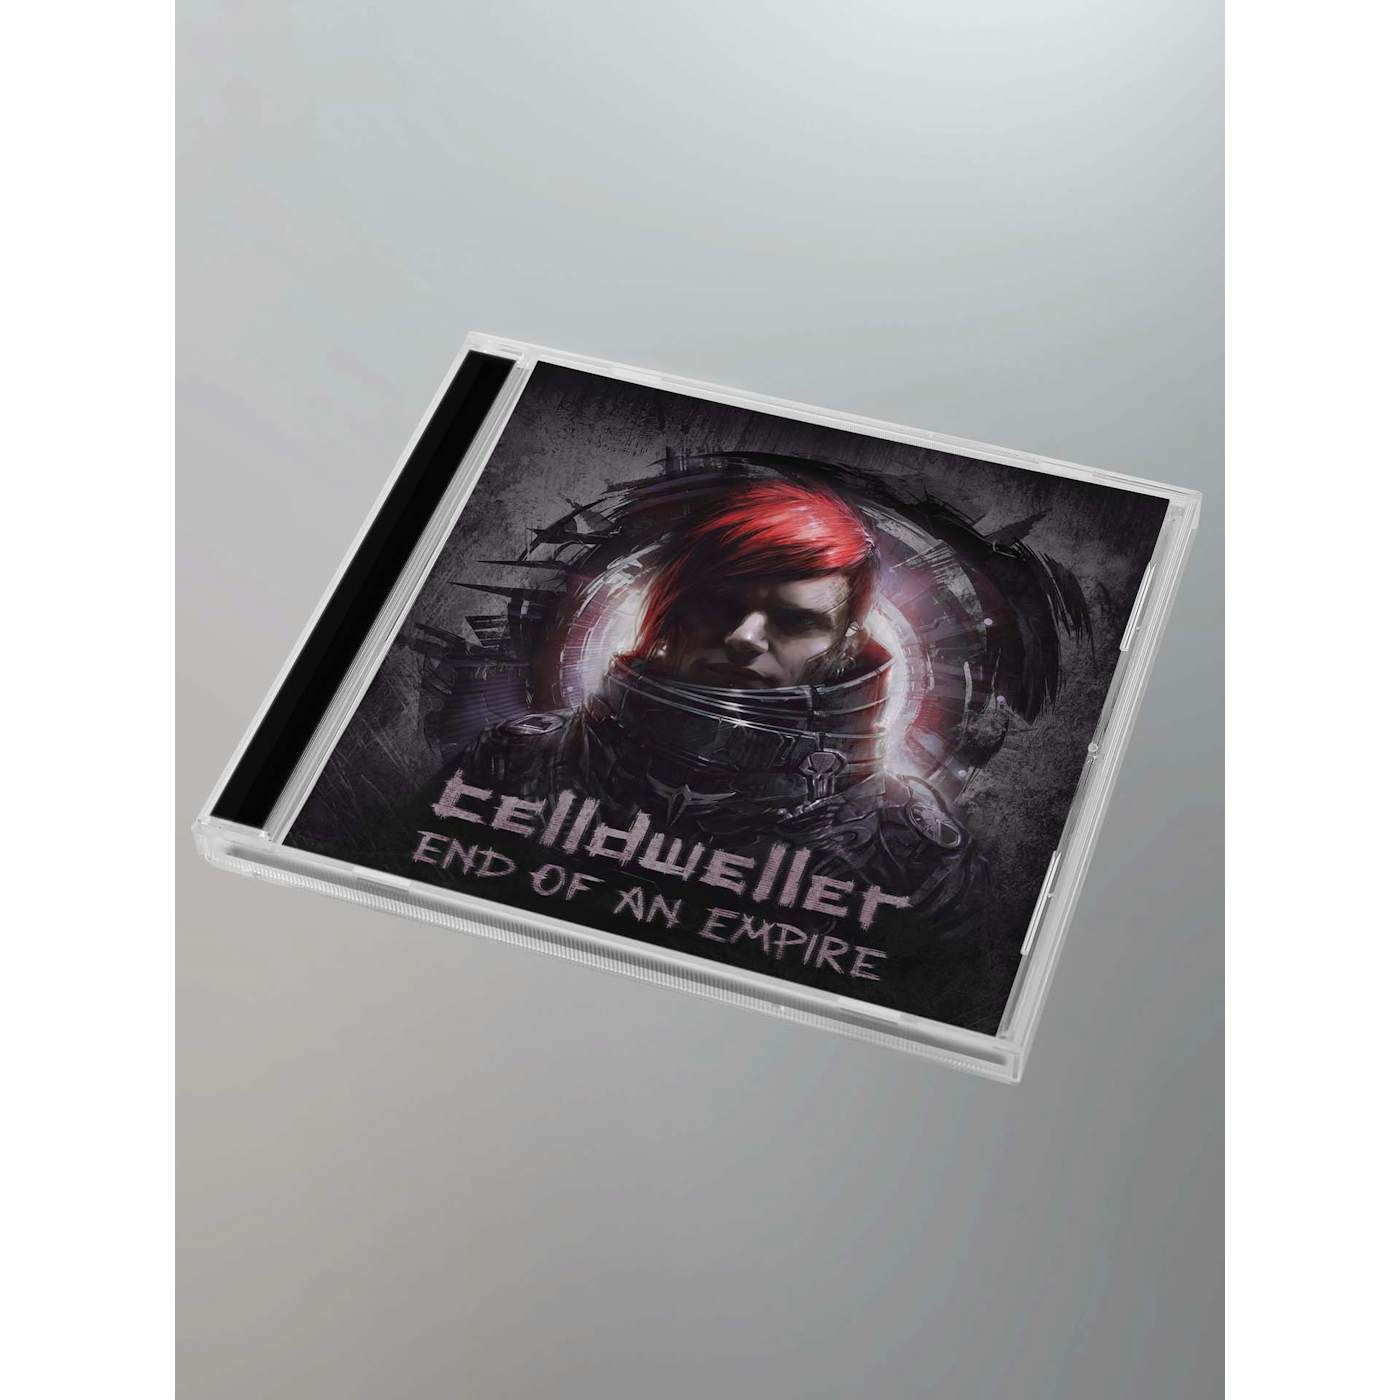 Celldweller - End of an Empire CD